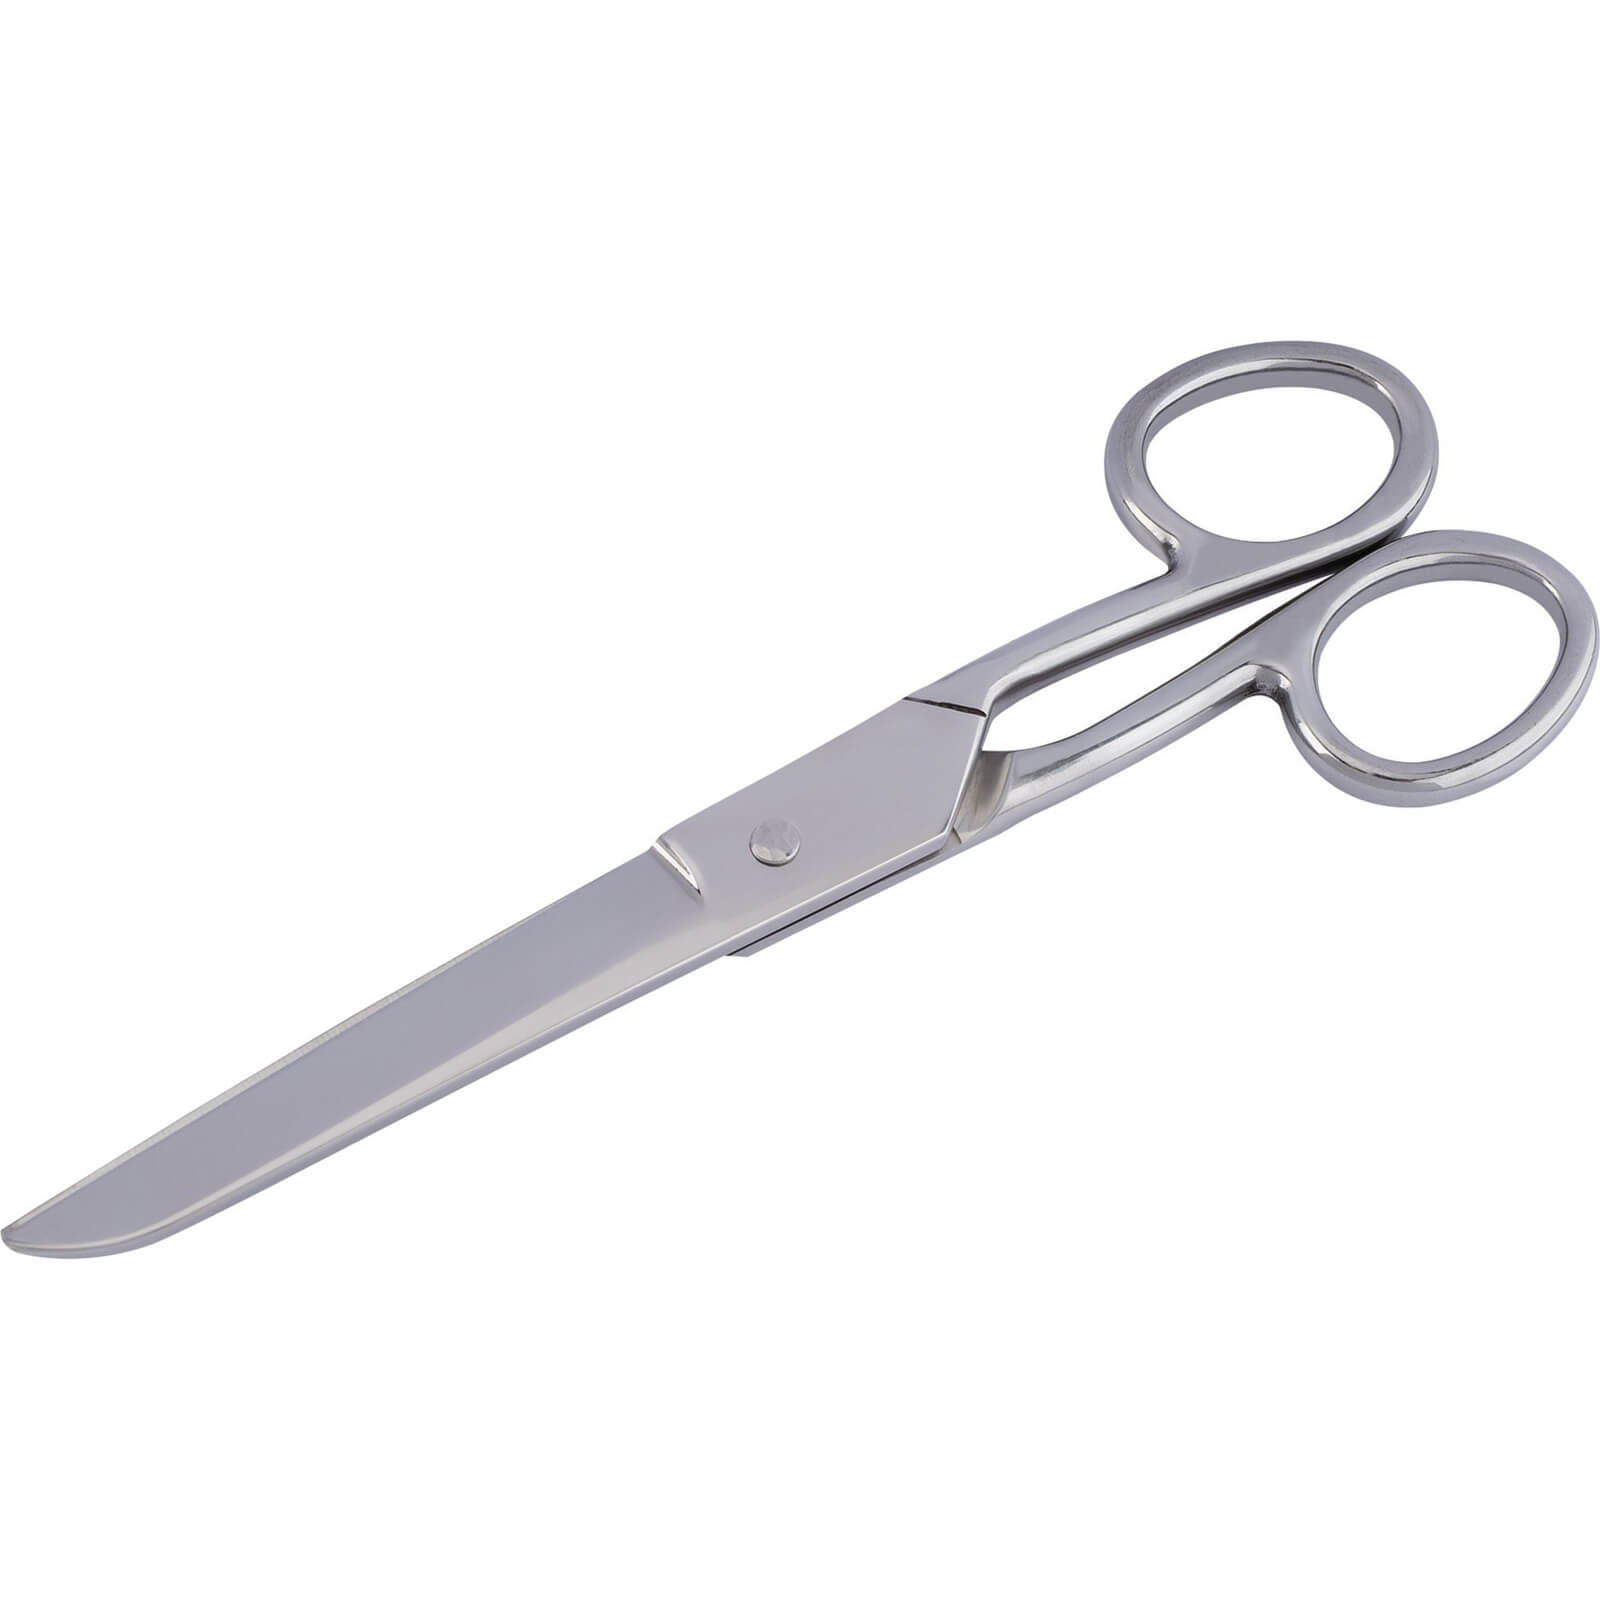 Image of Draper Household Scissors